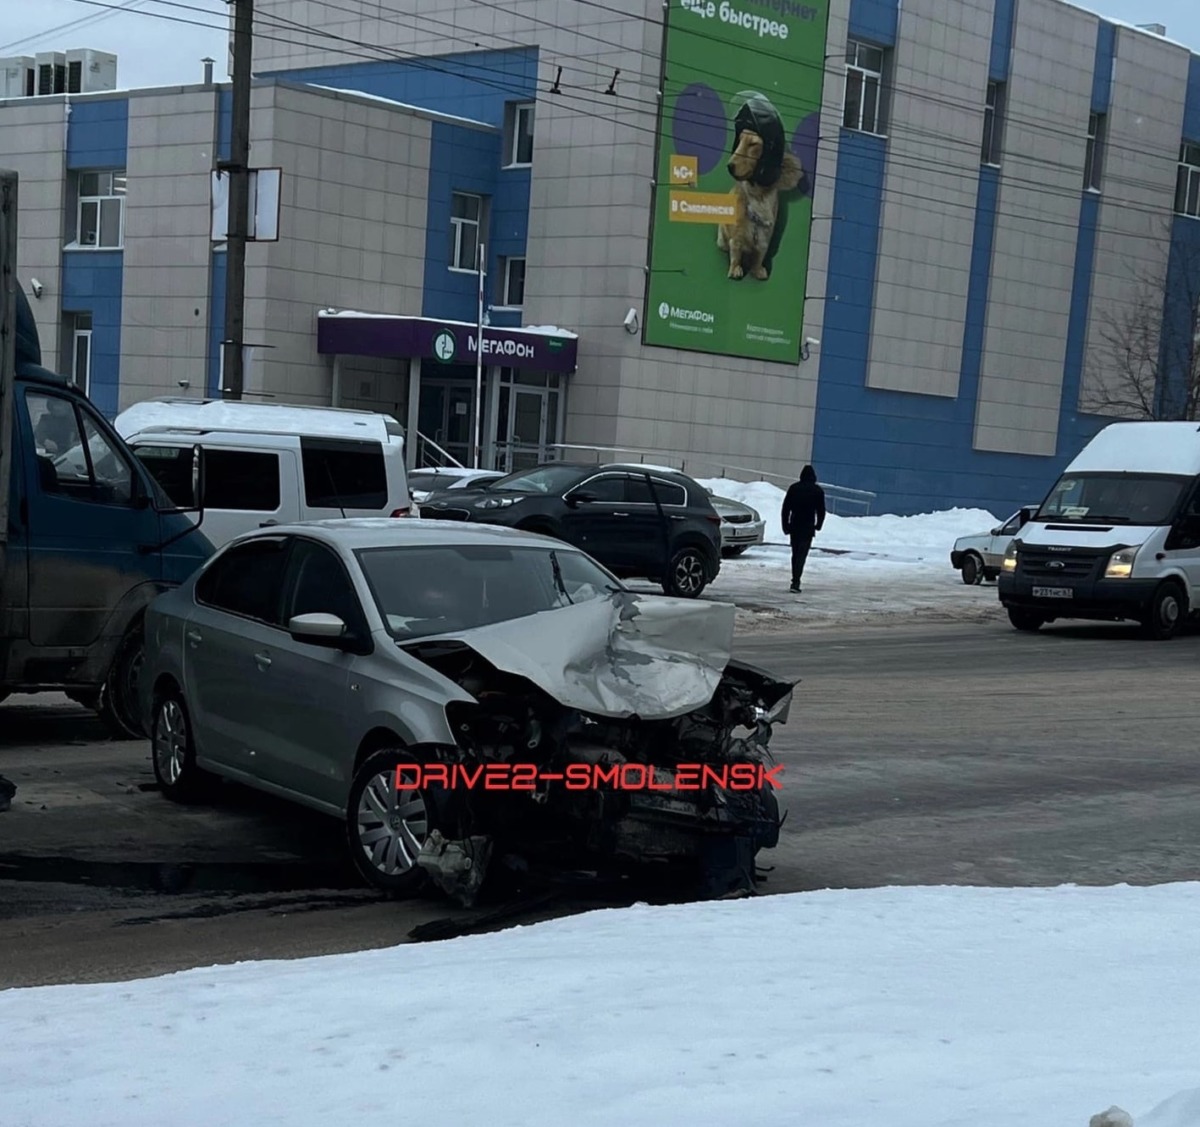 Джип вылетел с дороги. На Николаева в Смоленске произошла серьезная авария